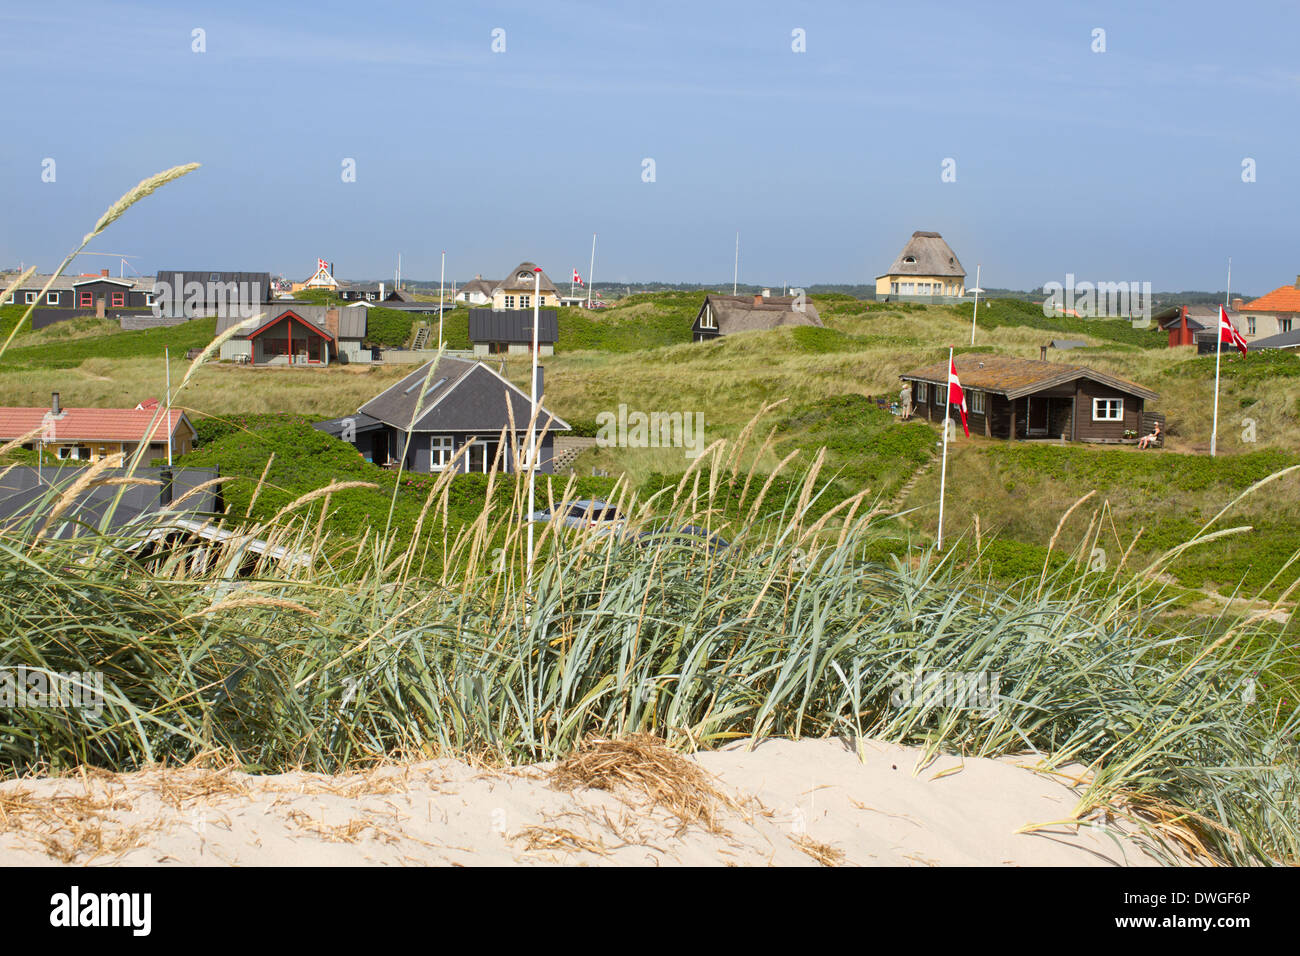 Vue panoramique de maisons d'été à la mer du Nord, rives de l'ouest de Jutland, Danemark. Soleil brille et que le ciel est bleu vif. Banque D'Images